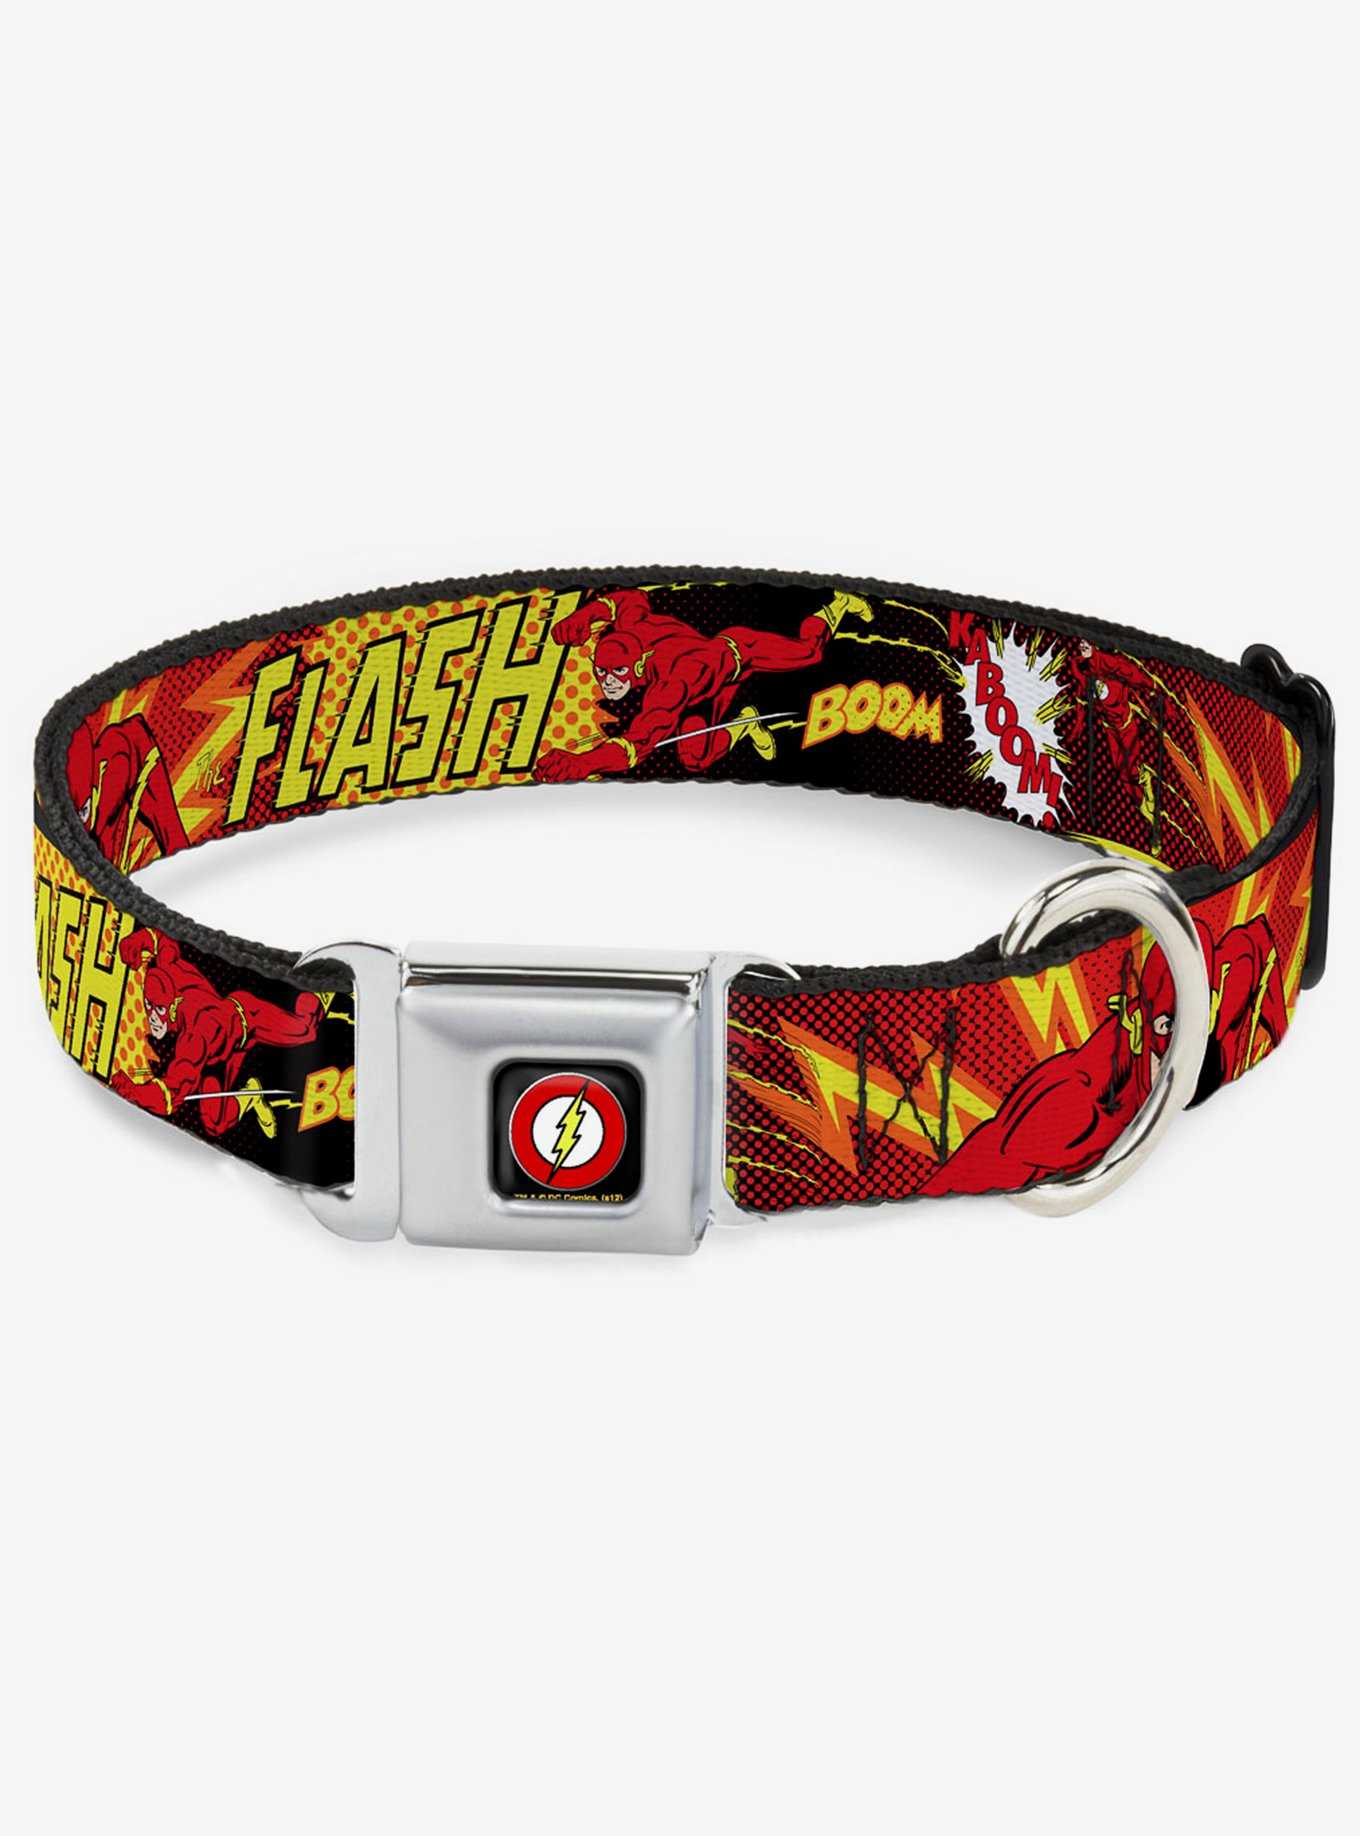 DC Comics Justice League The Flash Boom Kaboom Seatbelt Buckle Dog Collar, , hi-res